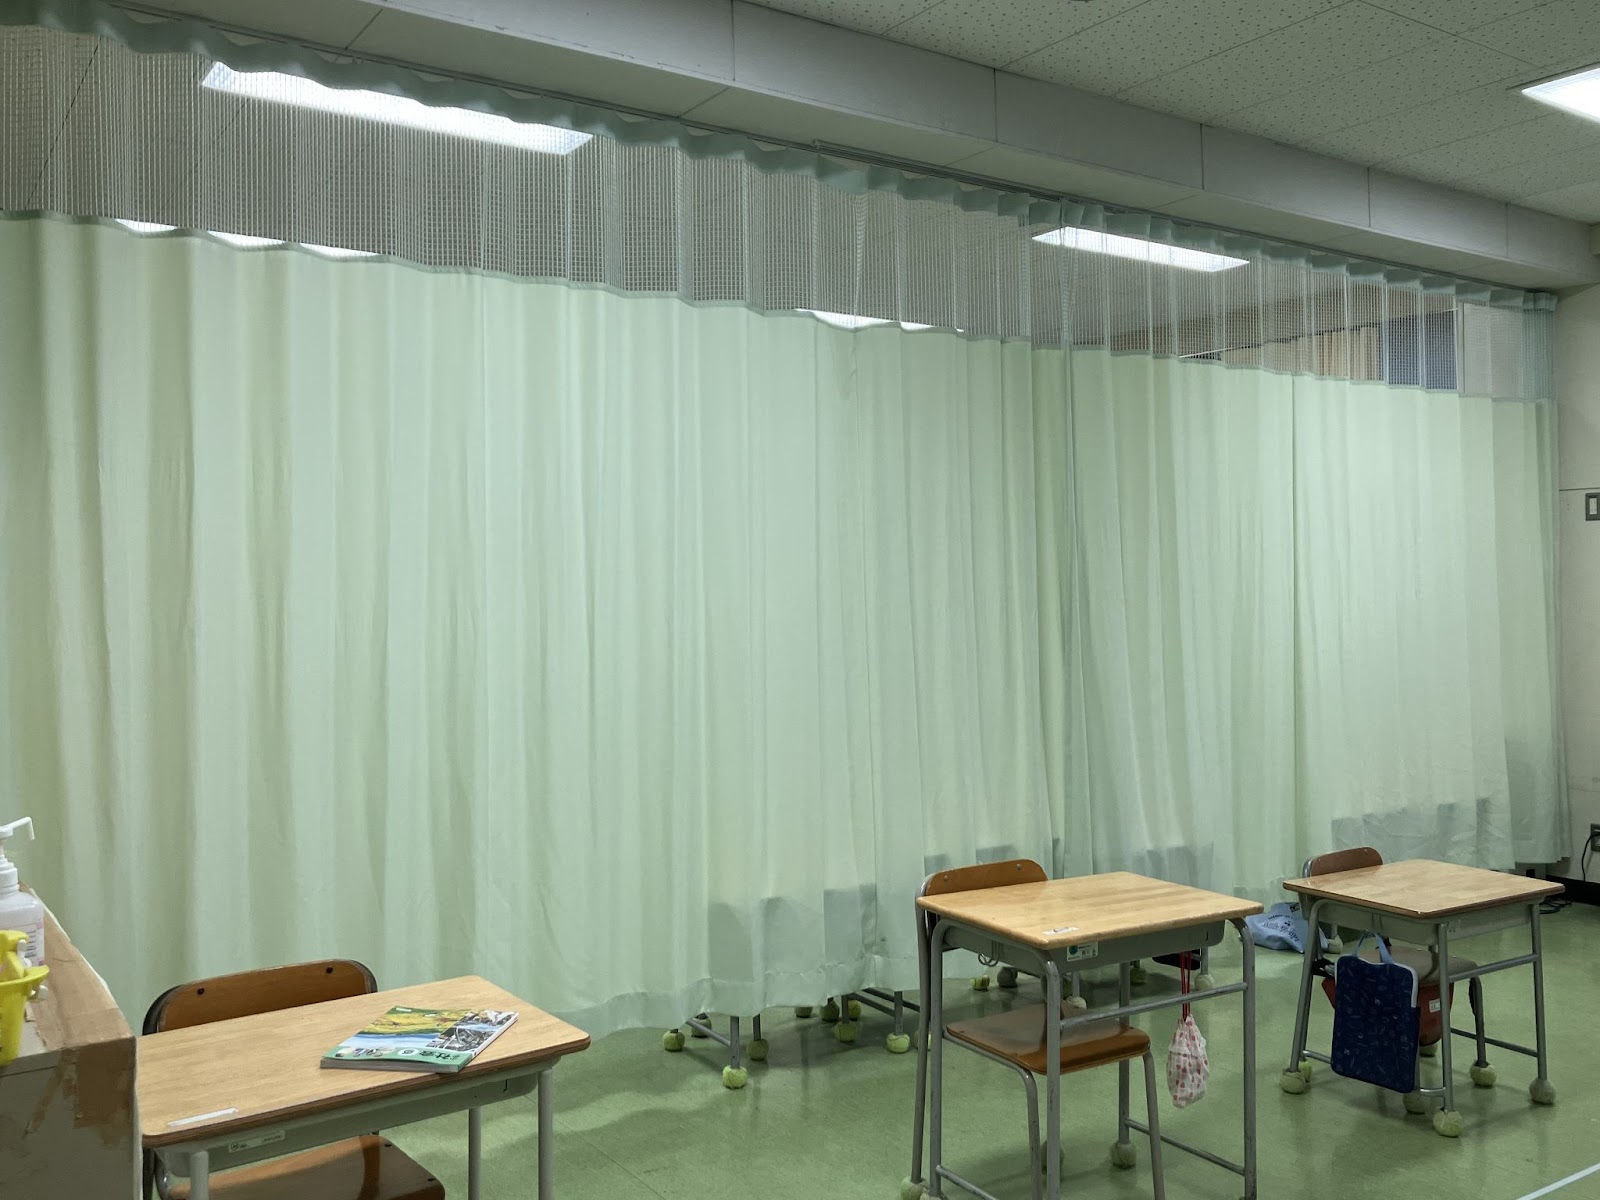 カーテンの設置された教室